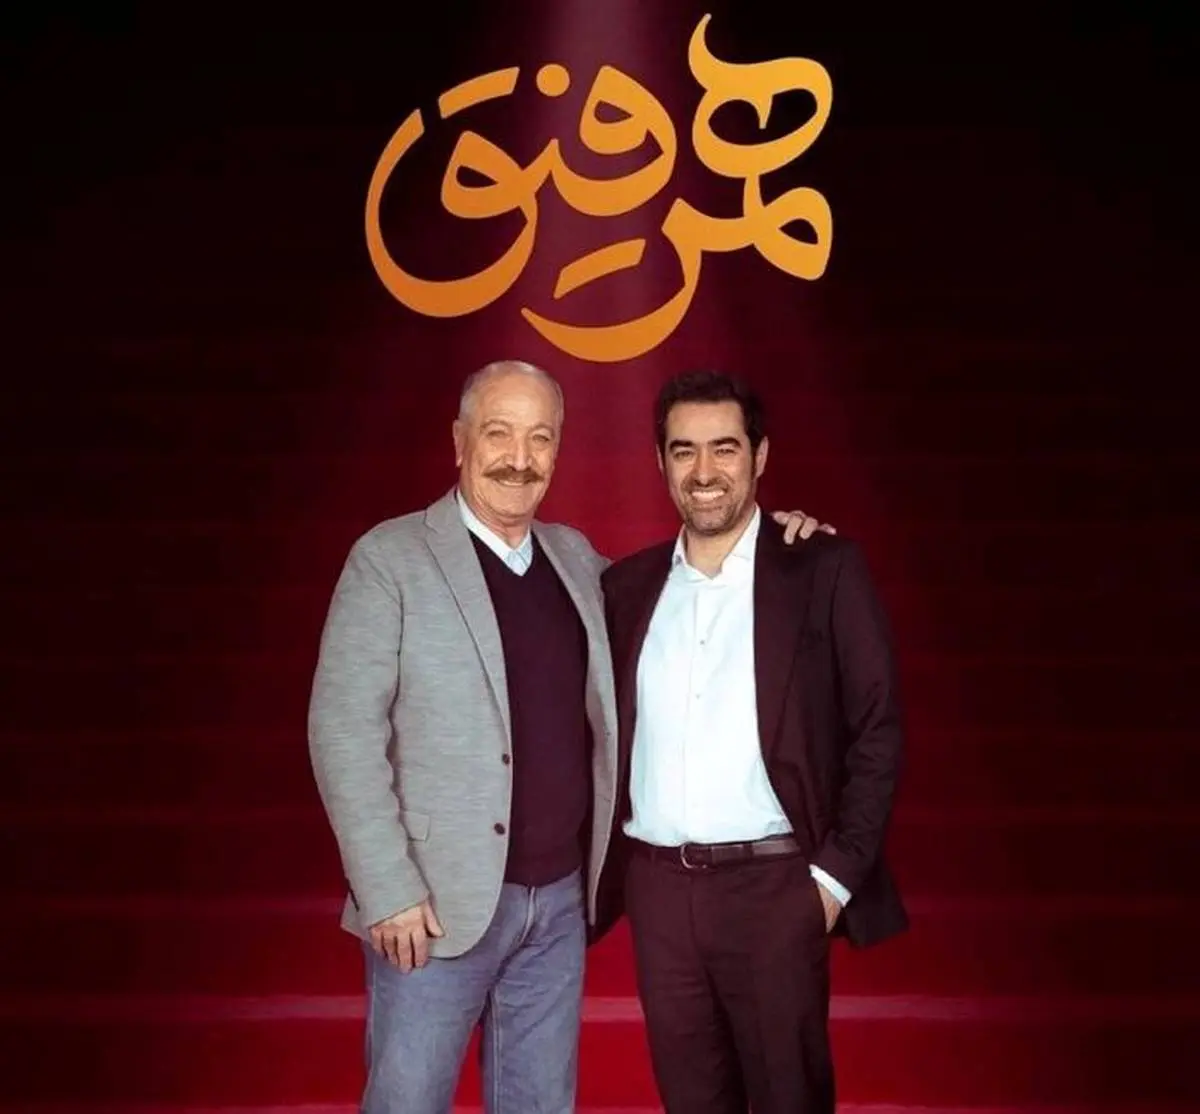 بازیگر معروف سریال دل مهمان این هفته شهاب حسینی می شود